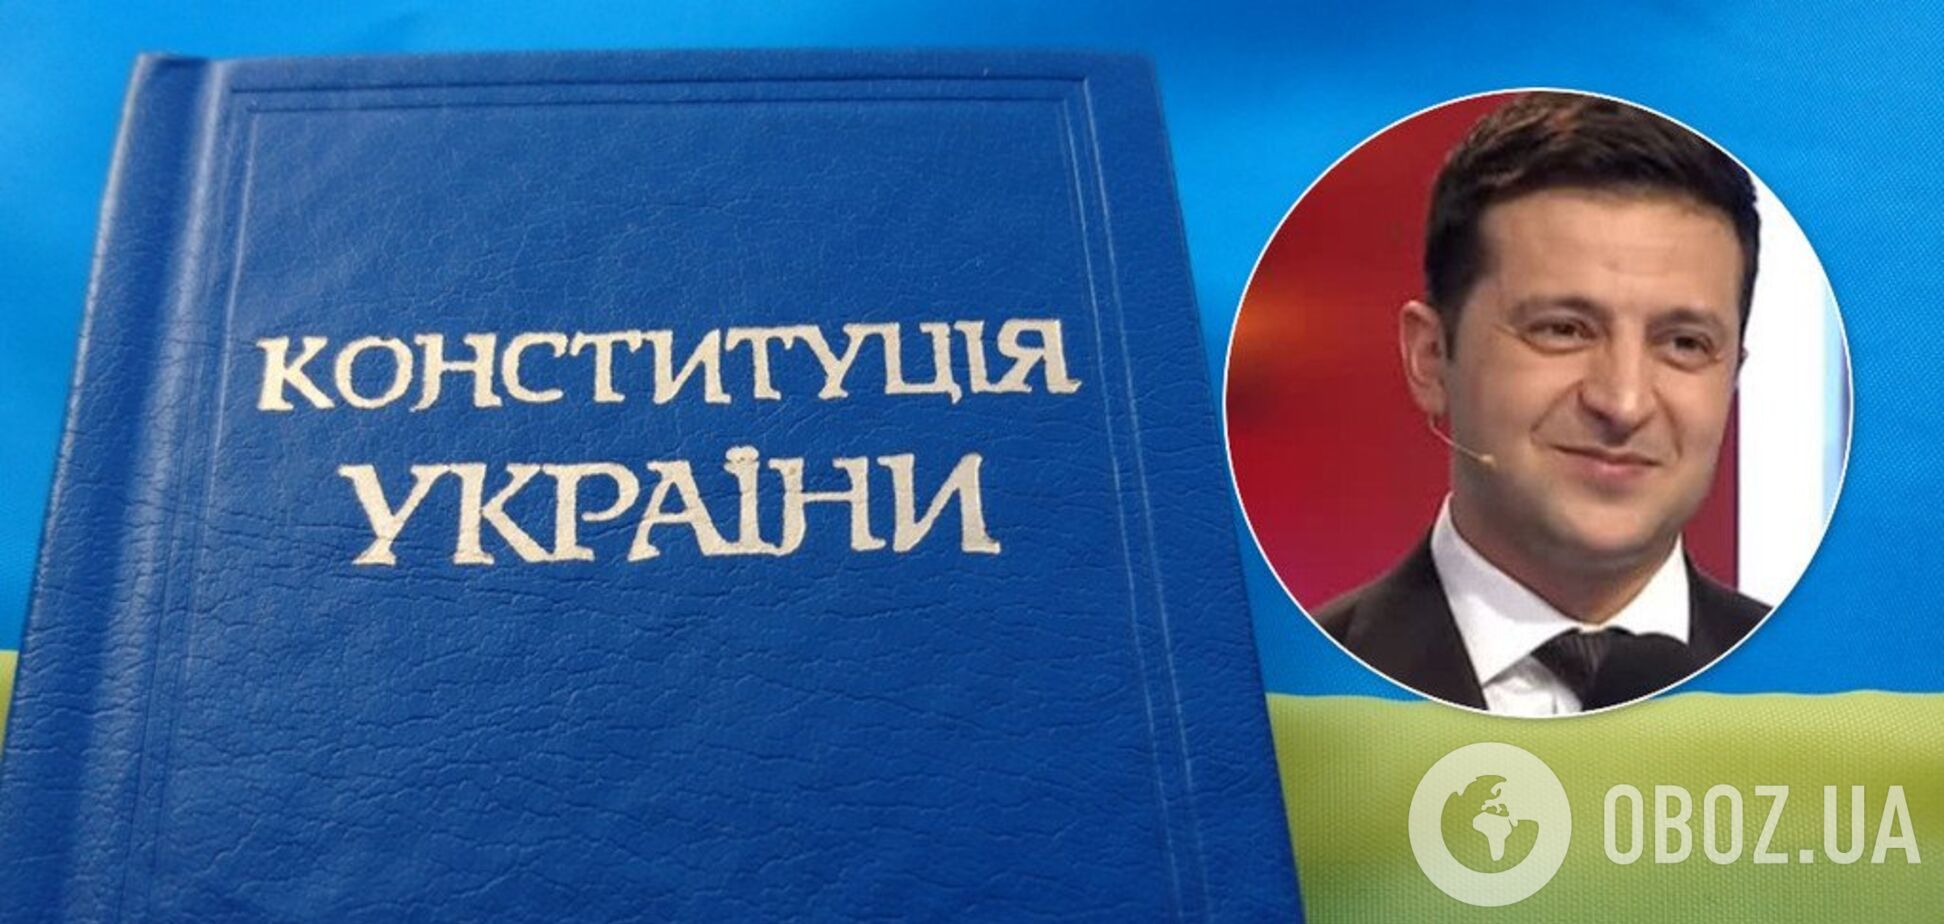 Двойное гражданство узаконят: Зеленский задумал перекроить Конституцию